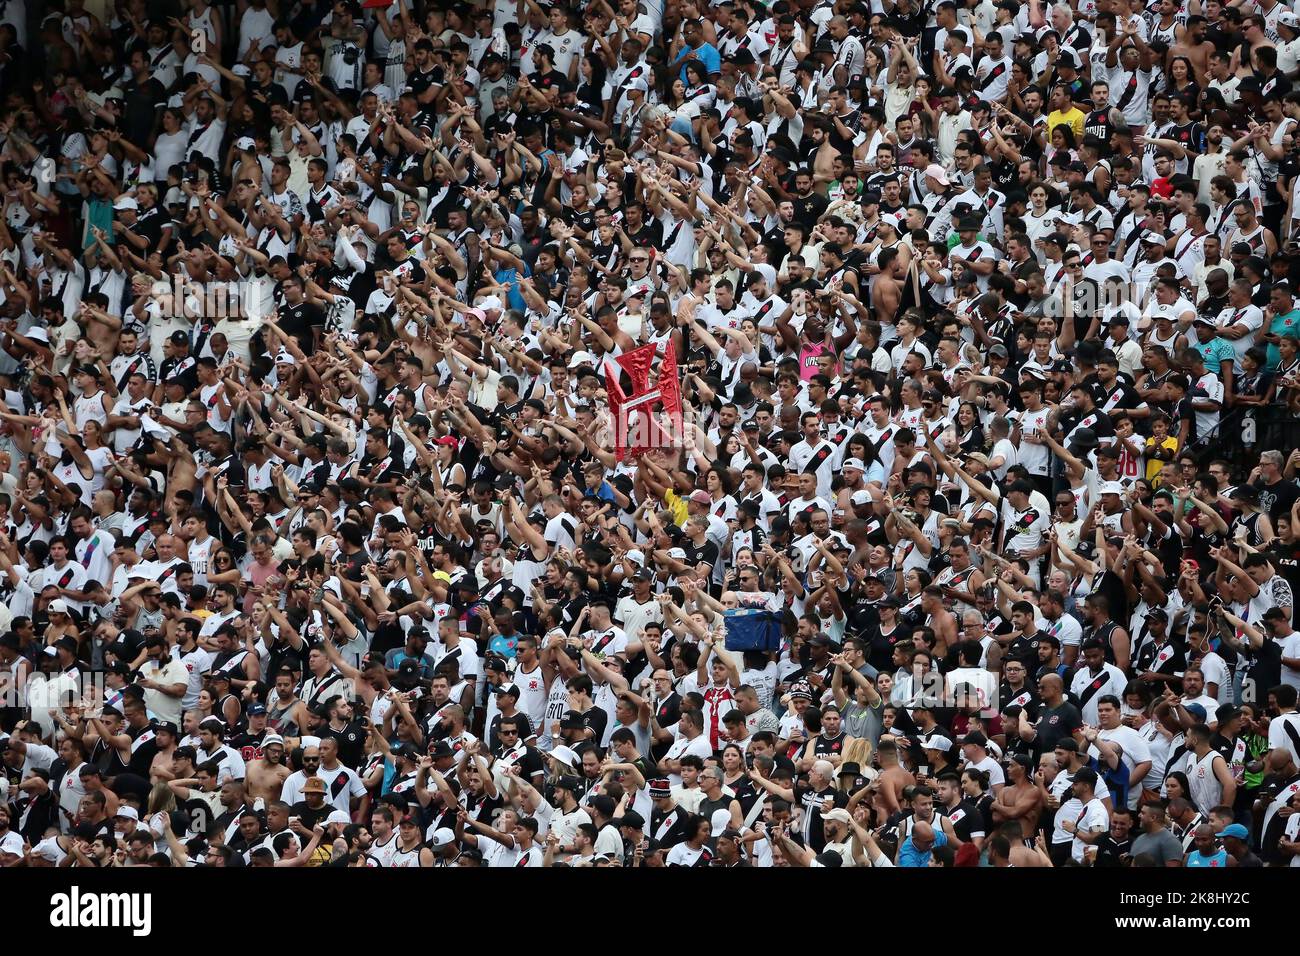 Rio de Janeiro, Brazil,September 27, 2022. Vasco fans, during the game Vasco x Criciuma in the stadium of São Januário. Stock Photo